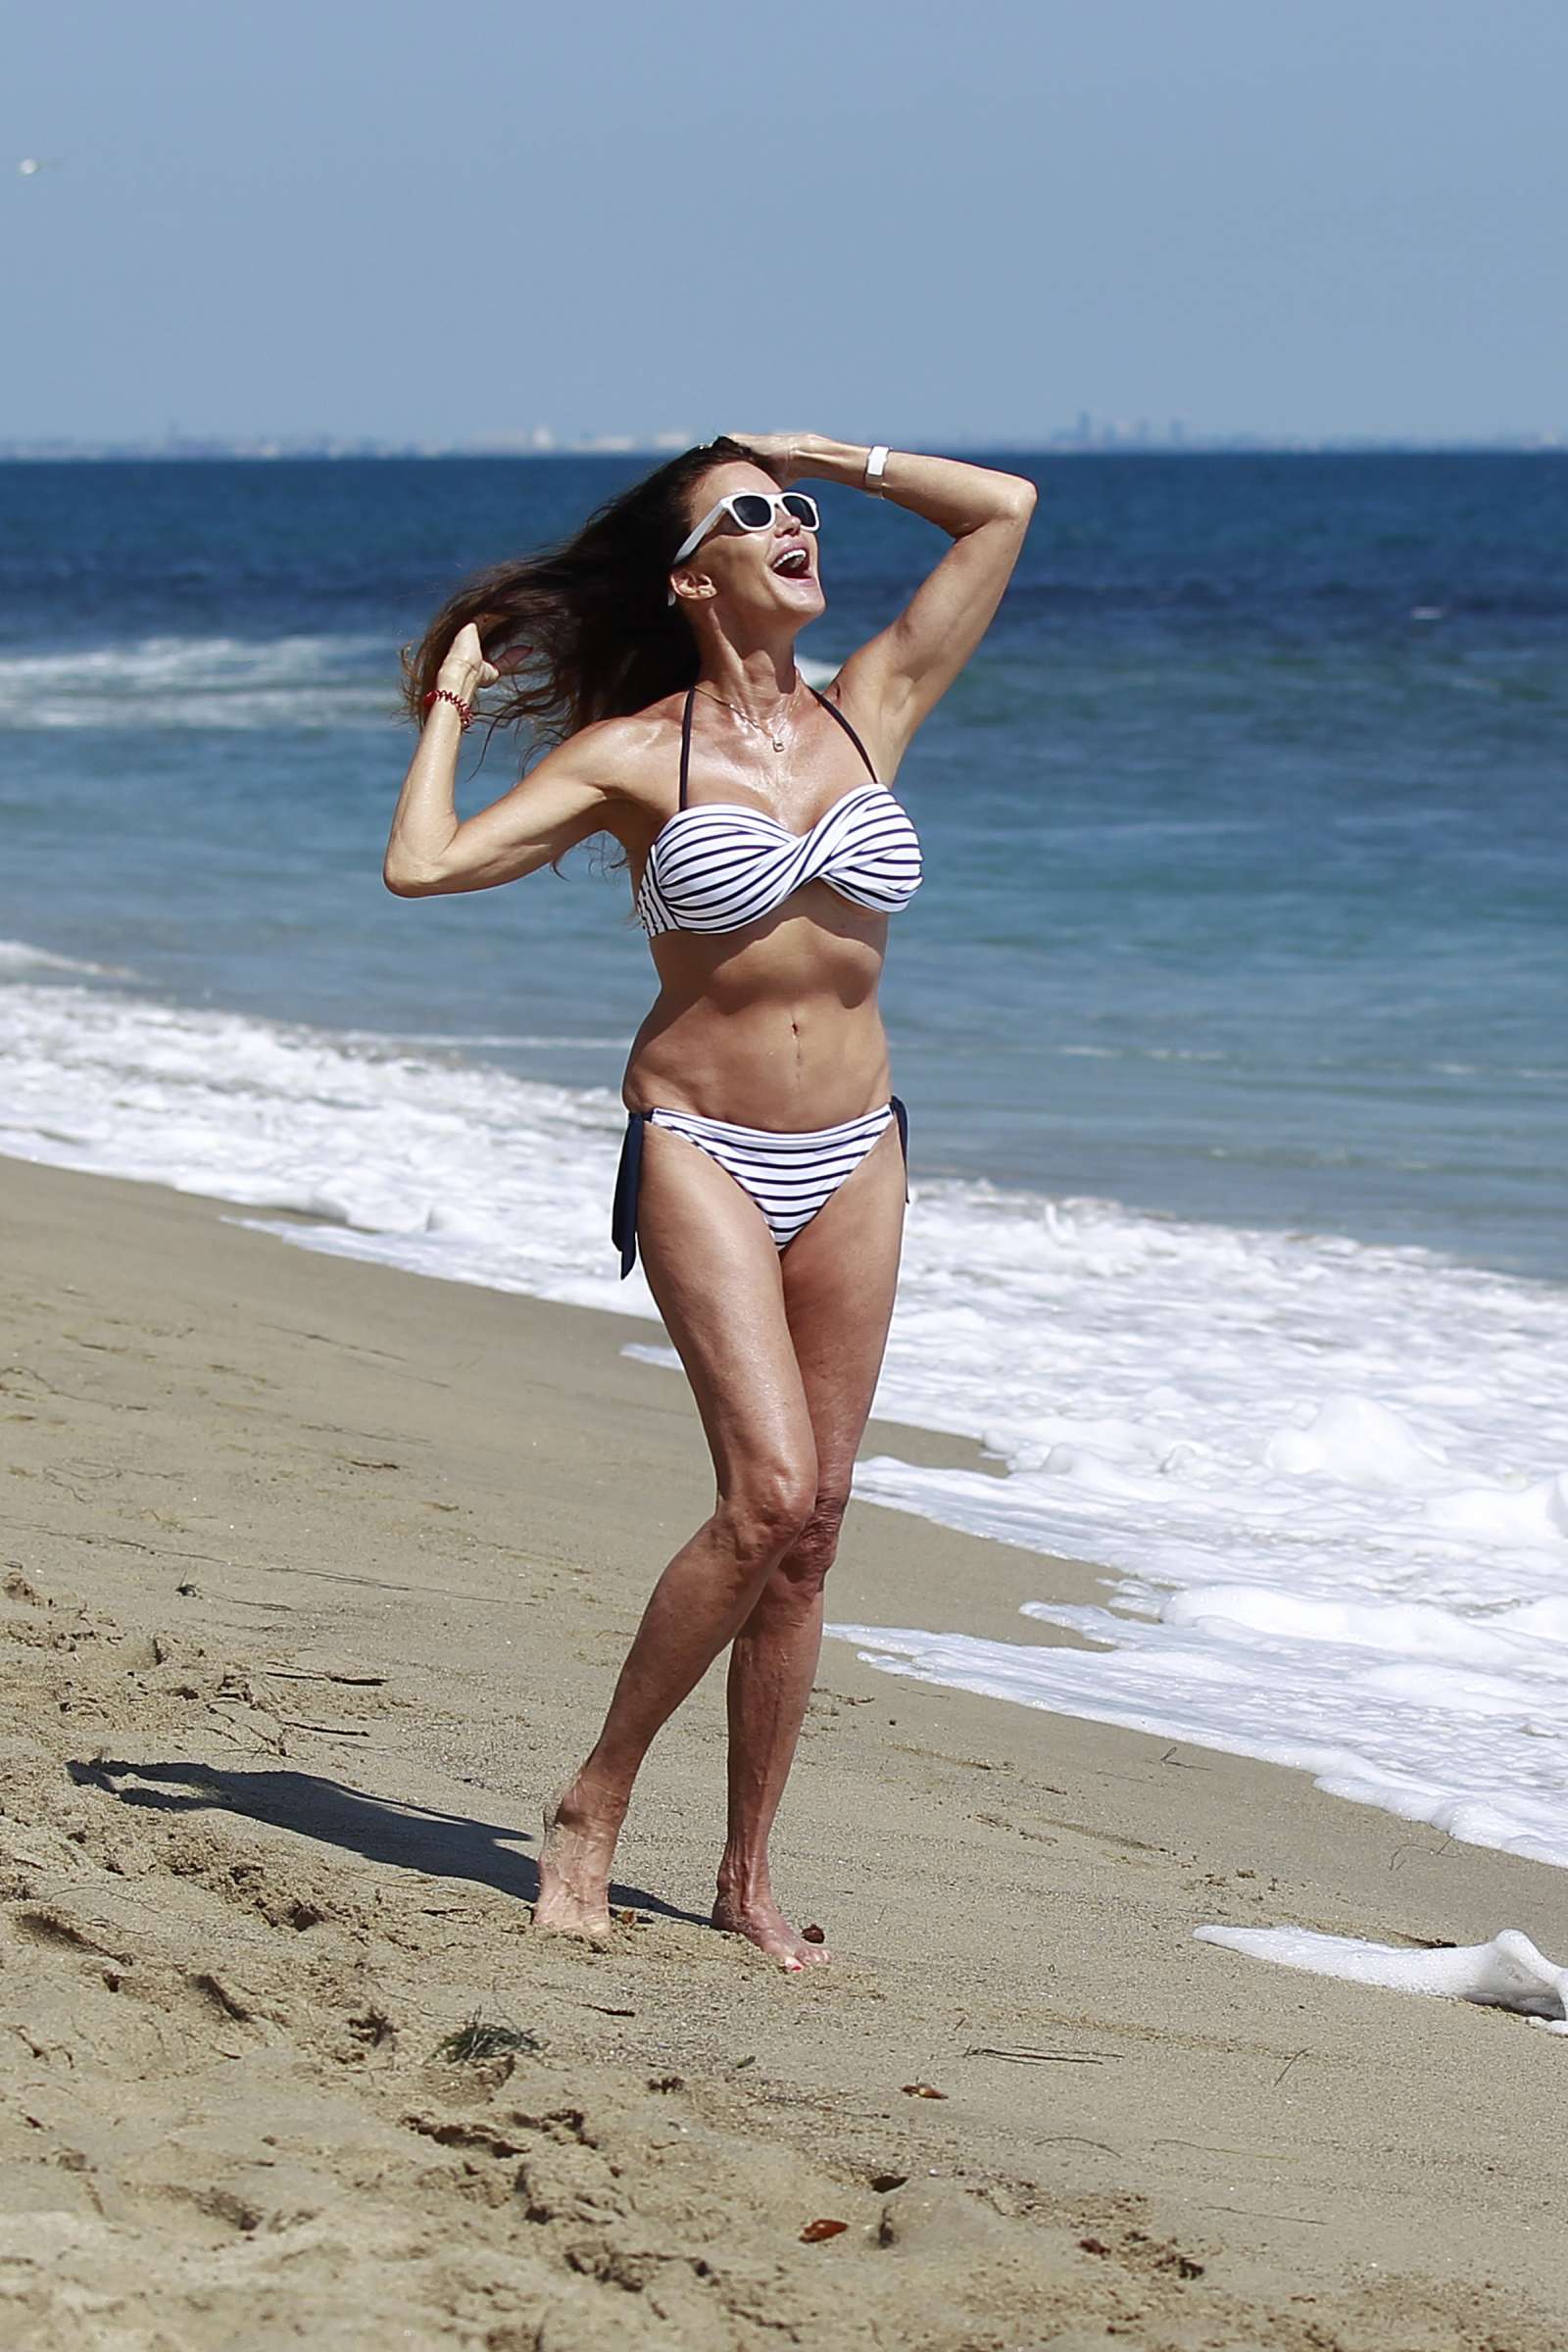 Janice Dickinson in Bikini on the beach in Malibu